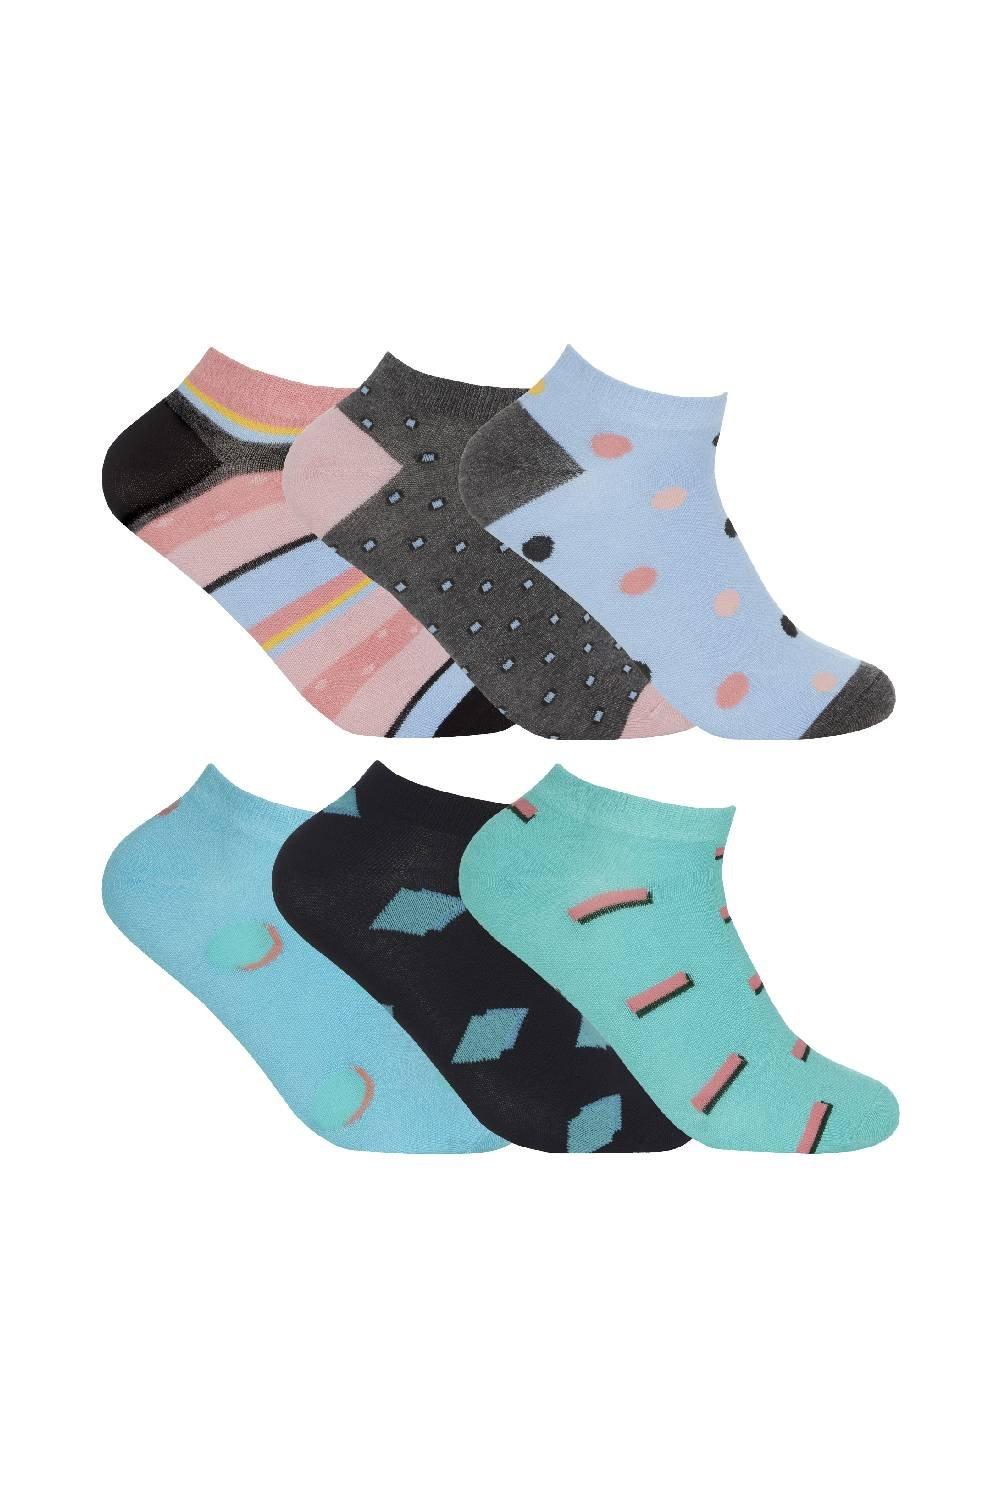 12 Pair Soft Bamboo Striped & Polka Dot Design Ankle Trainer Socks